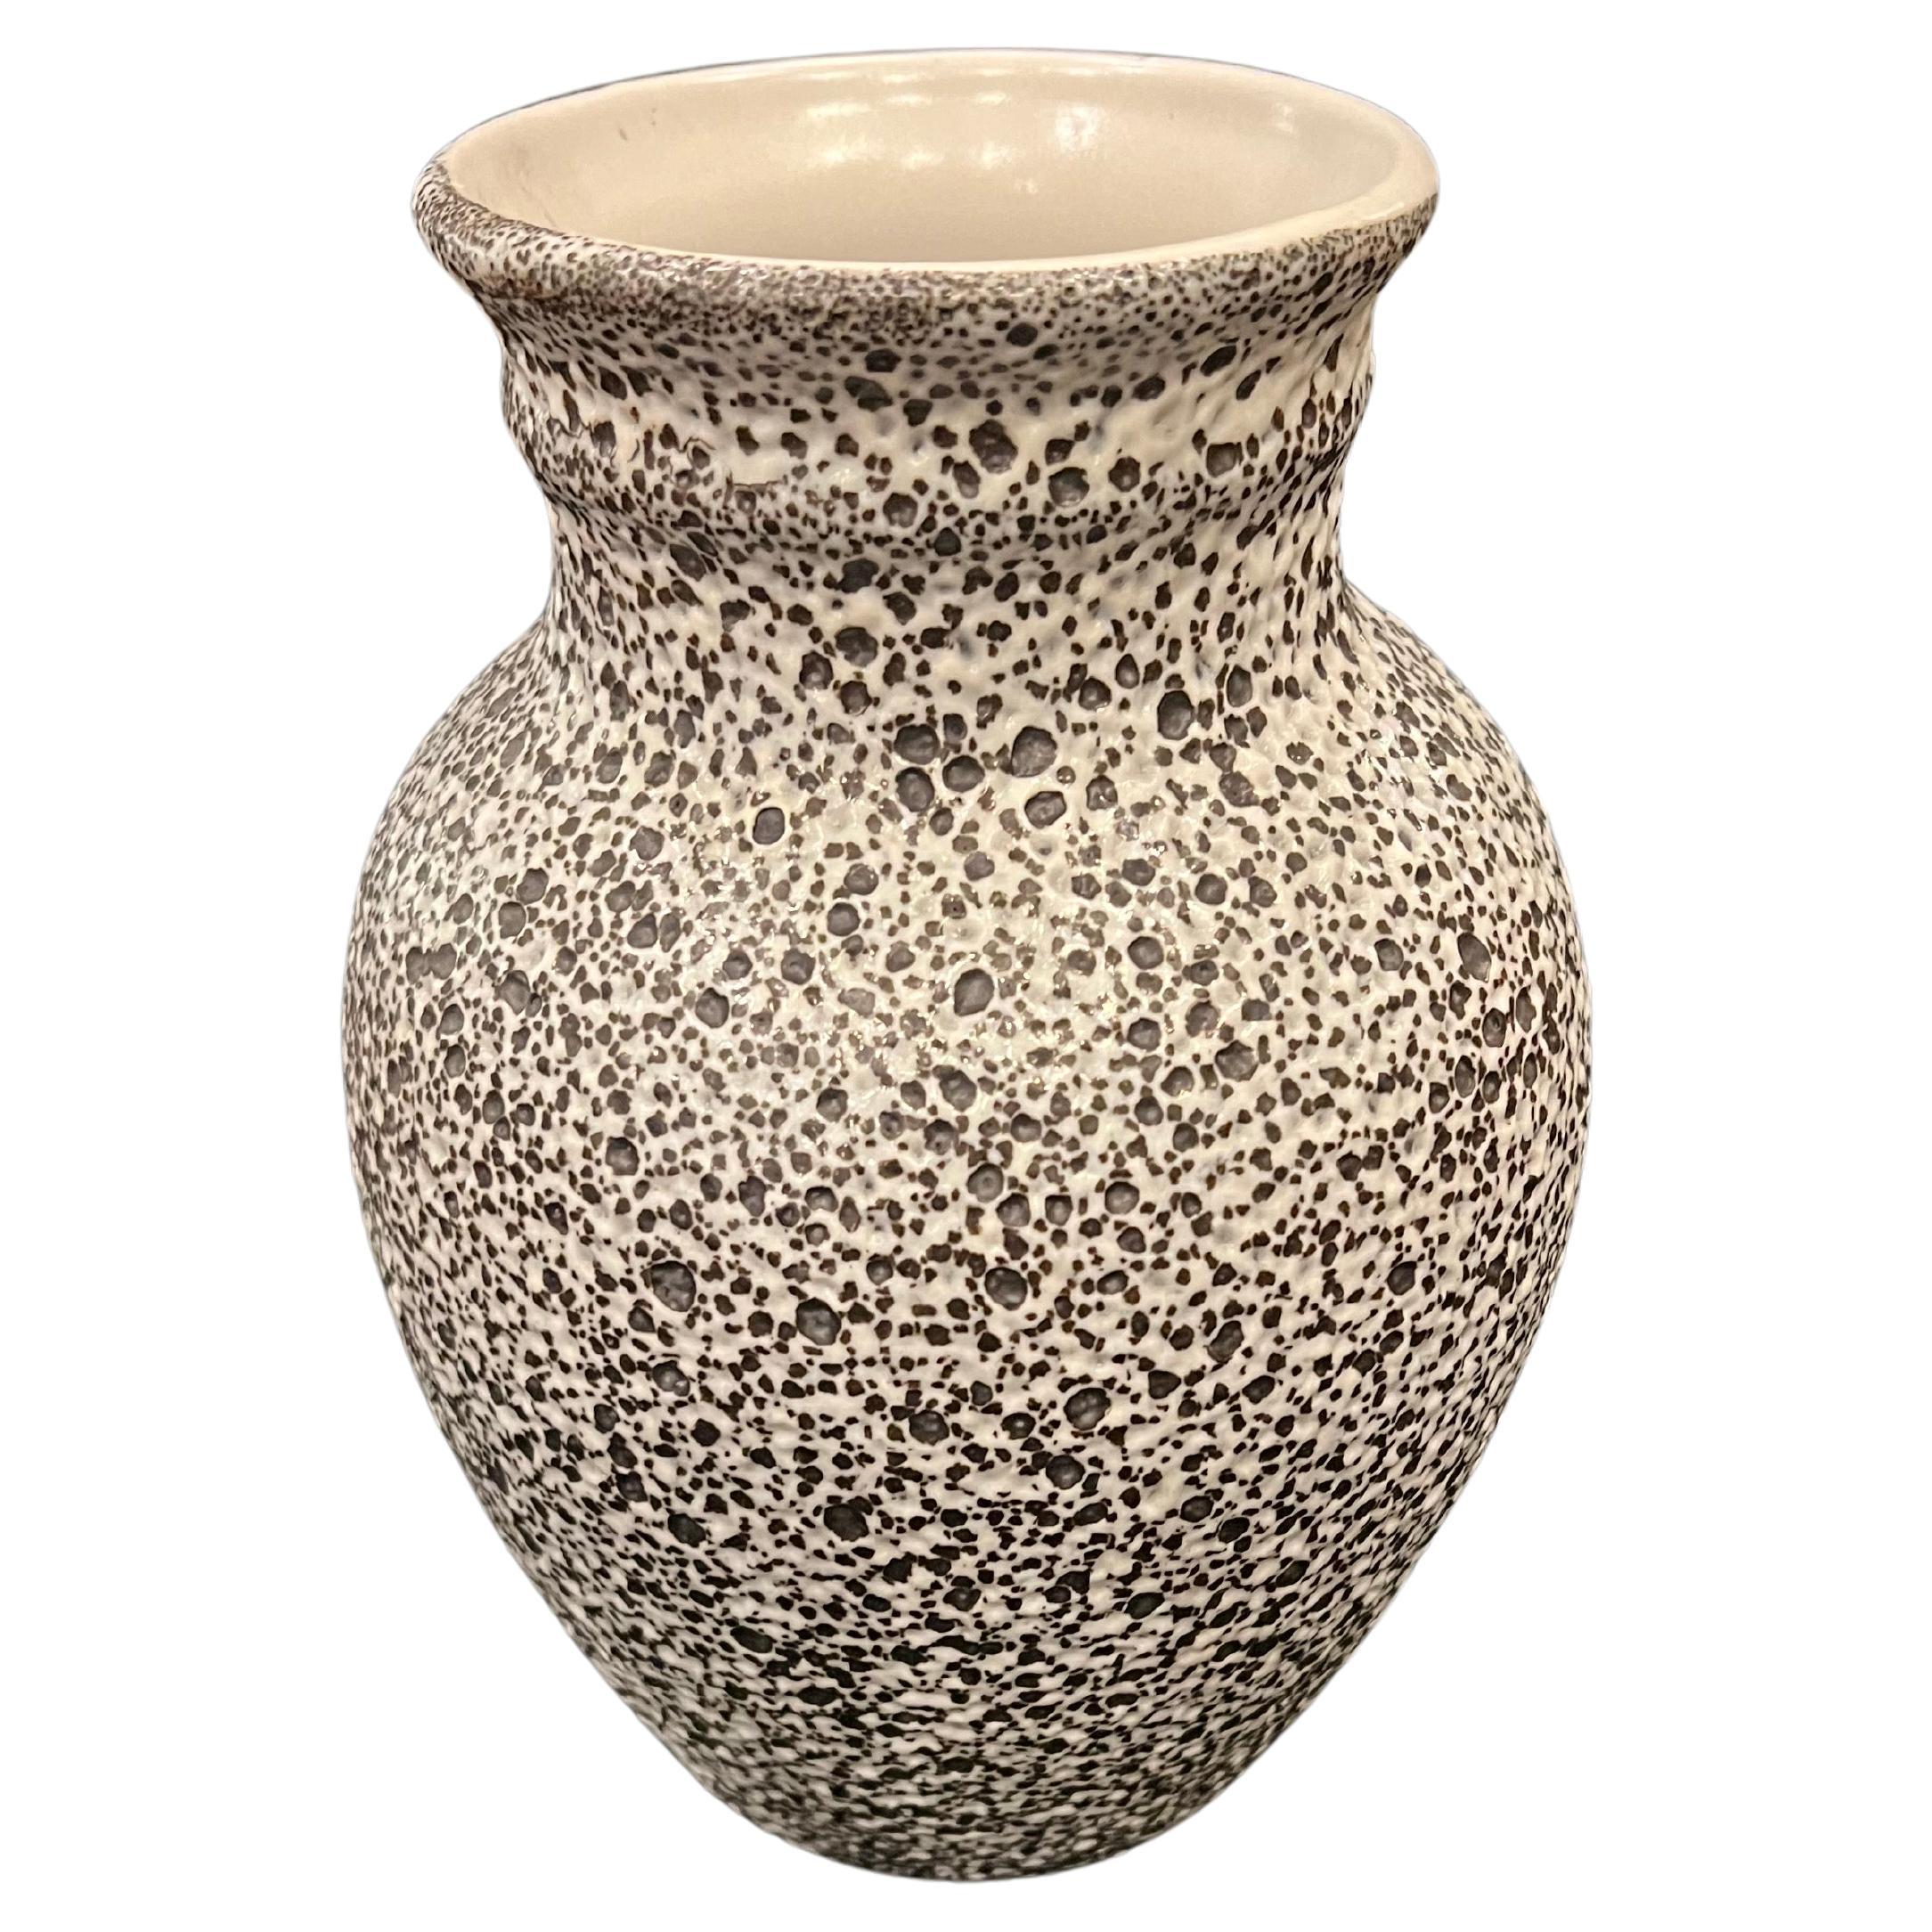 Vintage Mid-Century Modern Douglas Ferguson Pigeon Forge Pottery - 1960's Vase mit schwarz-weißer Lava-Glasur

Douglas Ferguson Pigeon Forge Pottery schwarz-weiße Vase mit Vulkankraterglasur und Quetschgefäß. Jedes Stück ist in perfektem Zustand,